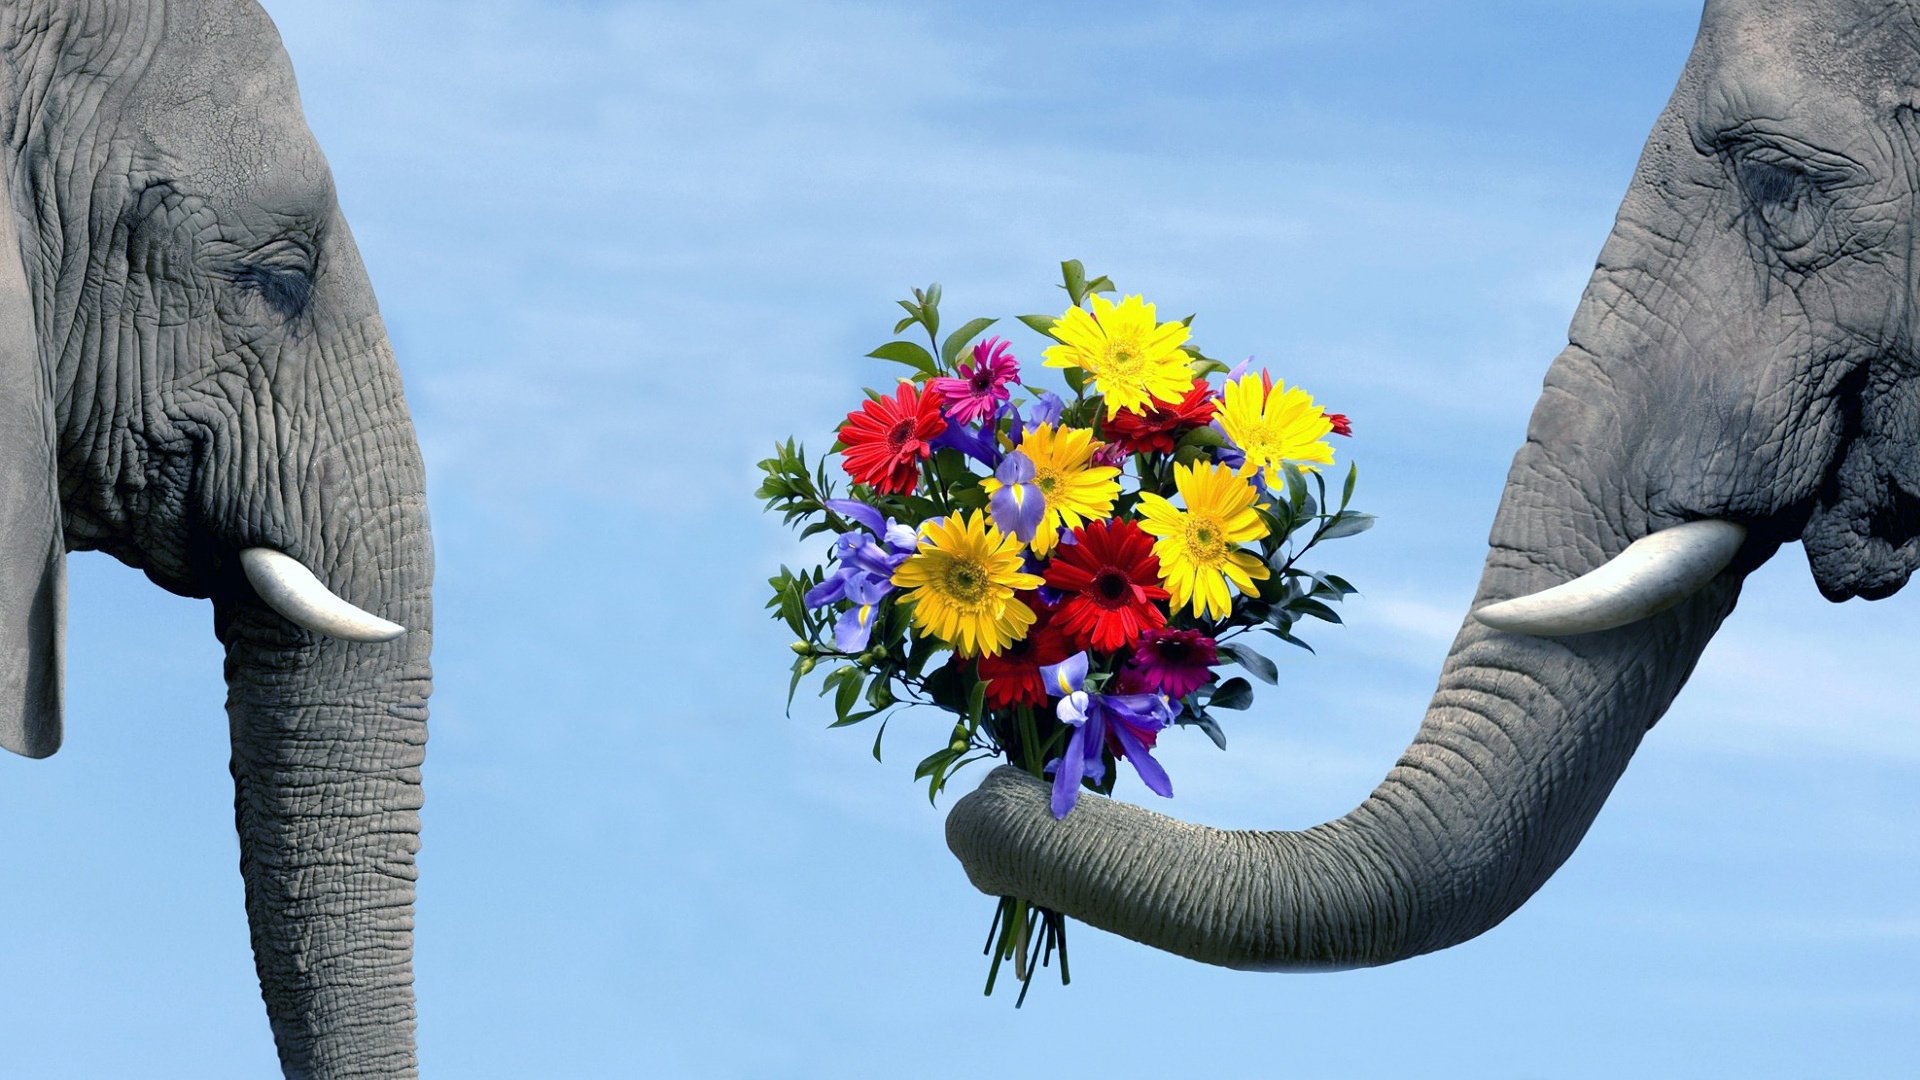 Слон держит в хоботе букет цветов и протягивает из слонихе